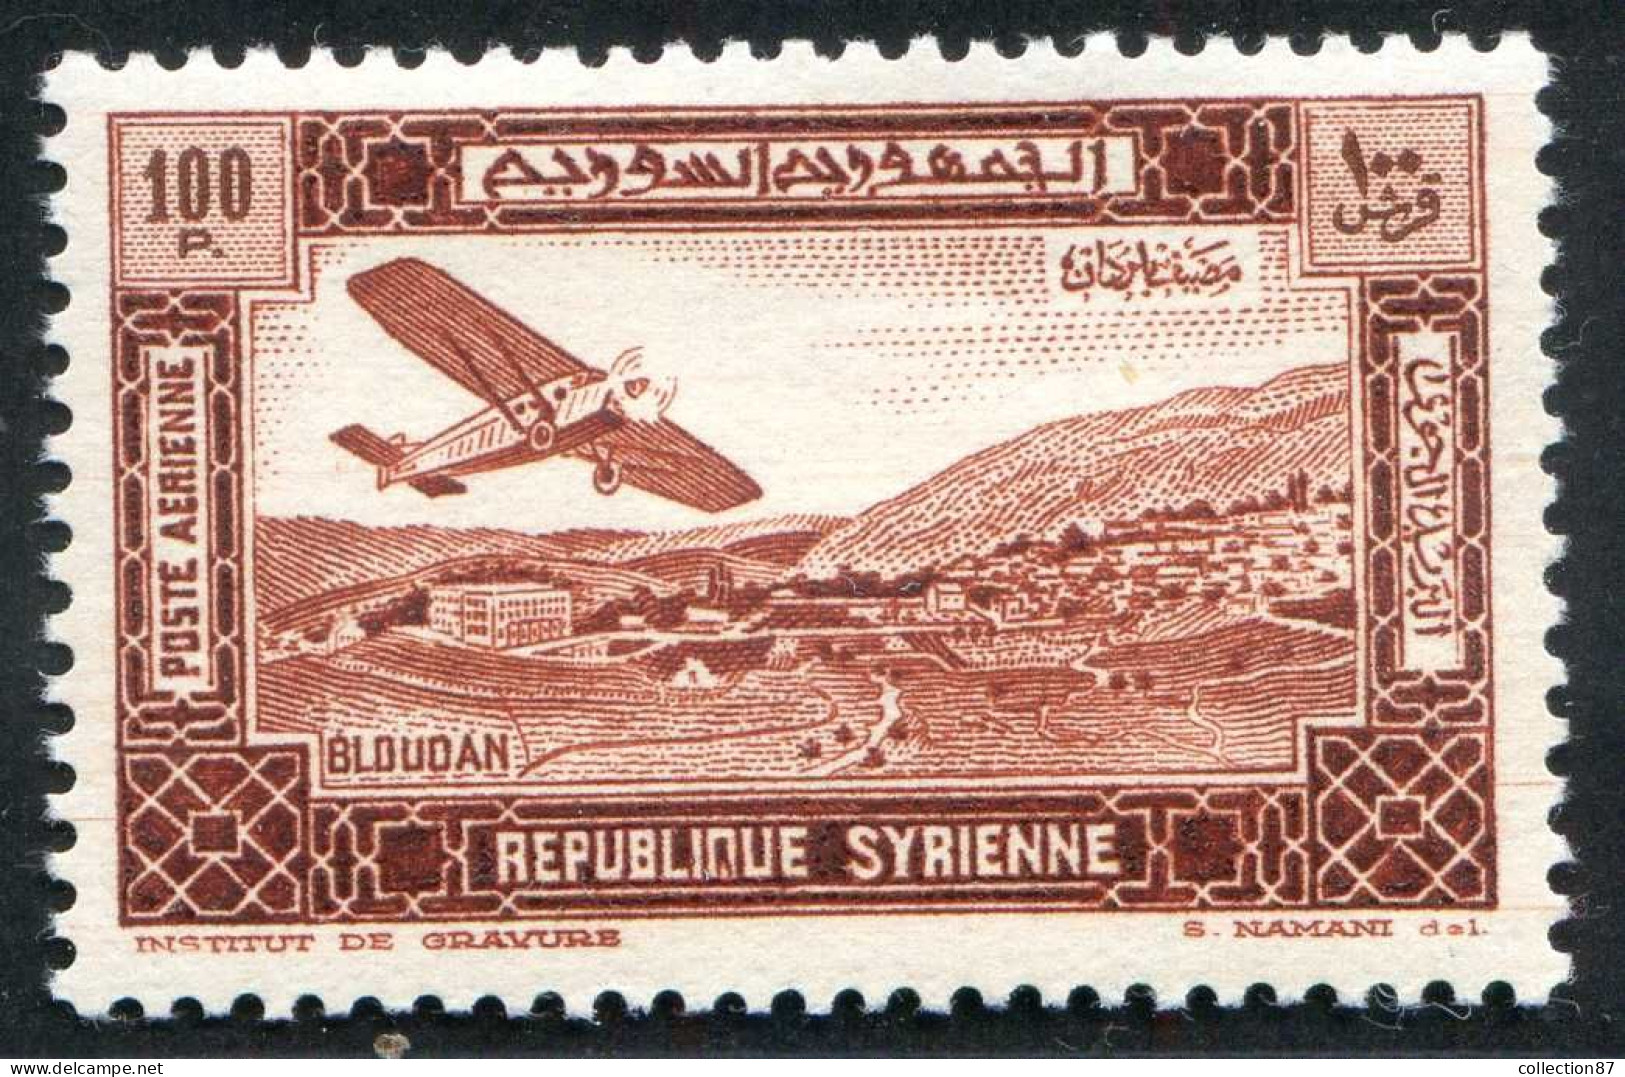 REF 086 > SYRIE < PA N° 69 * < Neuf Quasi Invisible Voir Dos - MH * < Poste Aérienne - Aéro - Air Mail - Airmail